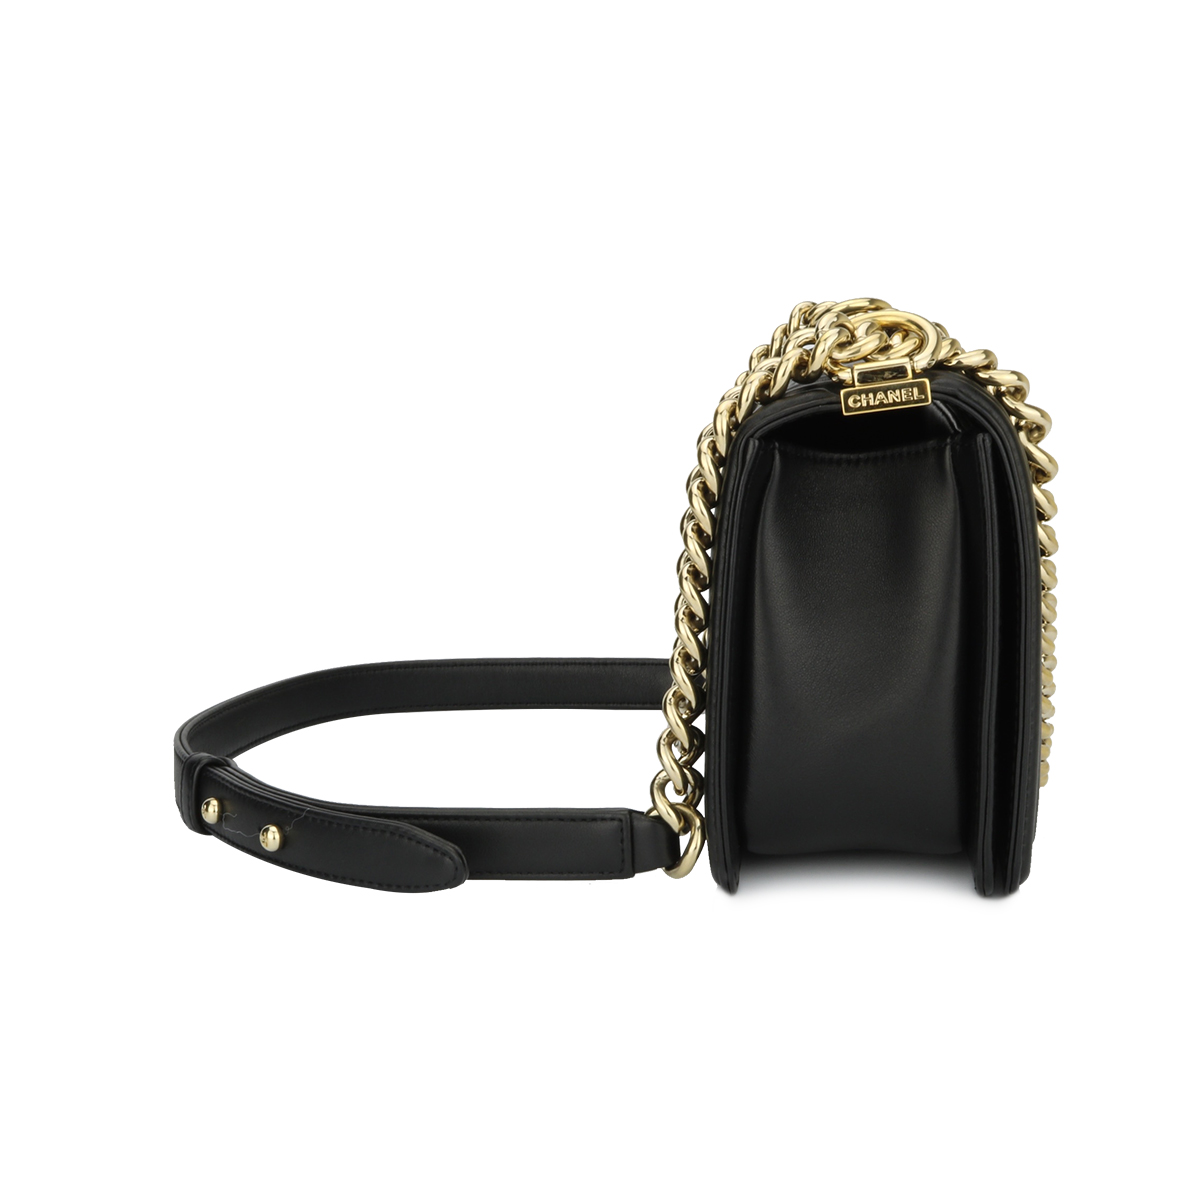 Chanel 𝟮𝟮𝗰 New Version, Golden Ball Bag 𝚂𝚚𝚞𝚊𝚛𝚎 𝚖𝚒𝚗𝚒 Flap Bag  Light Milk Tea